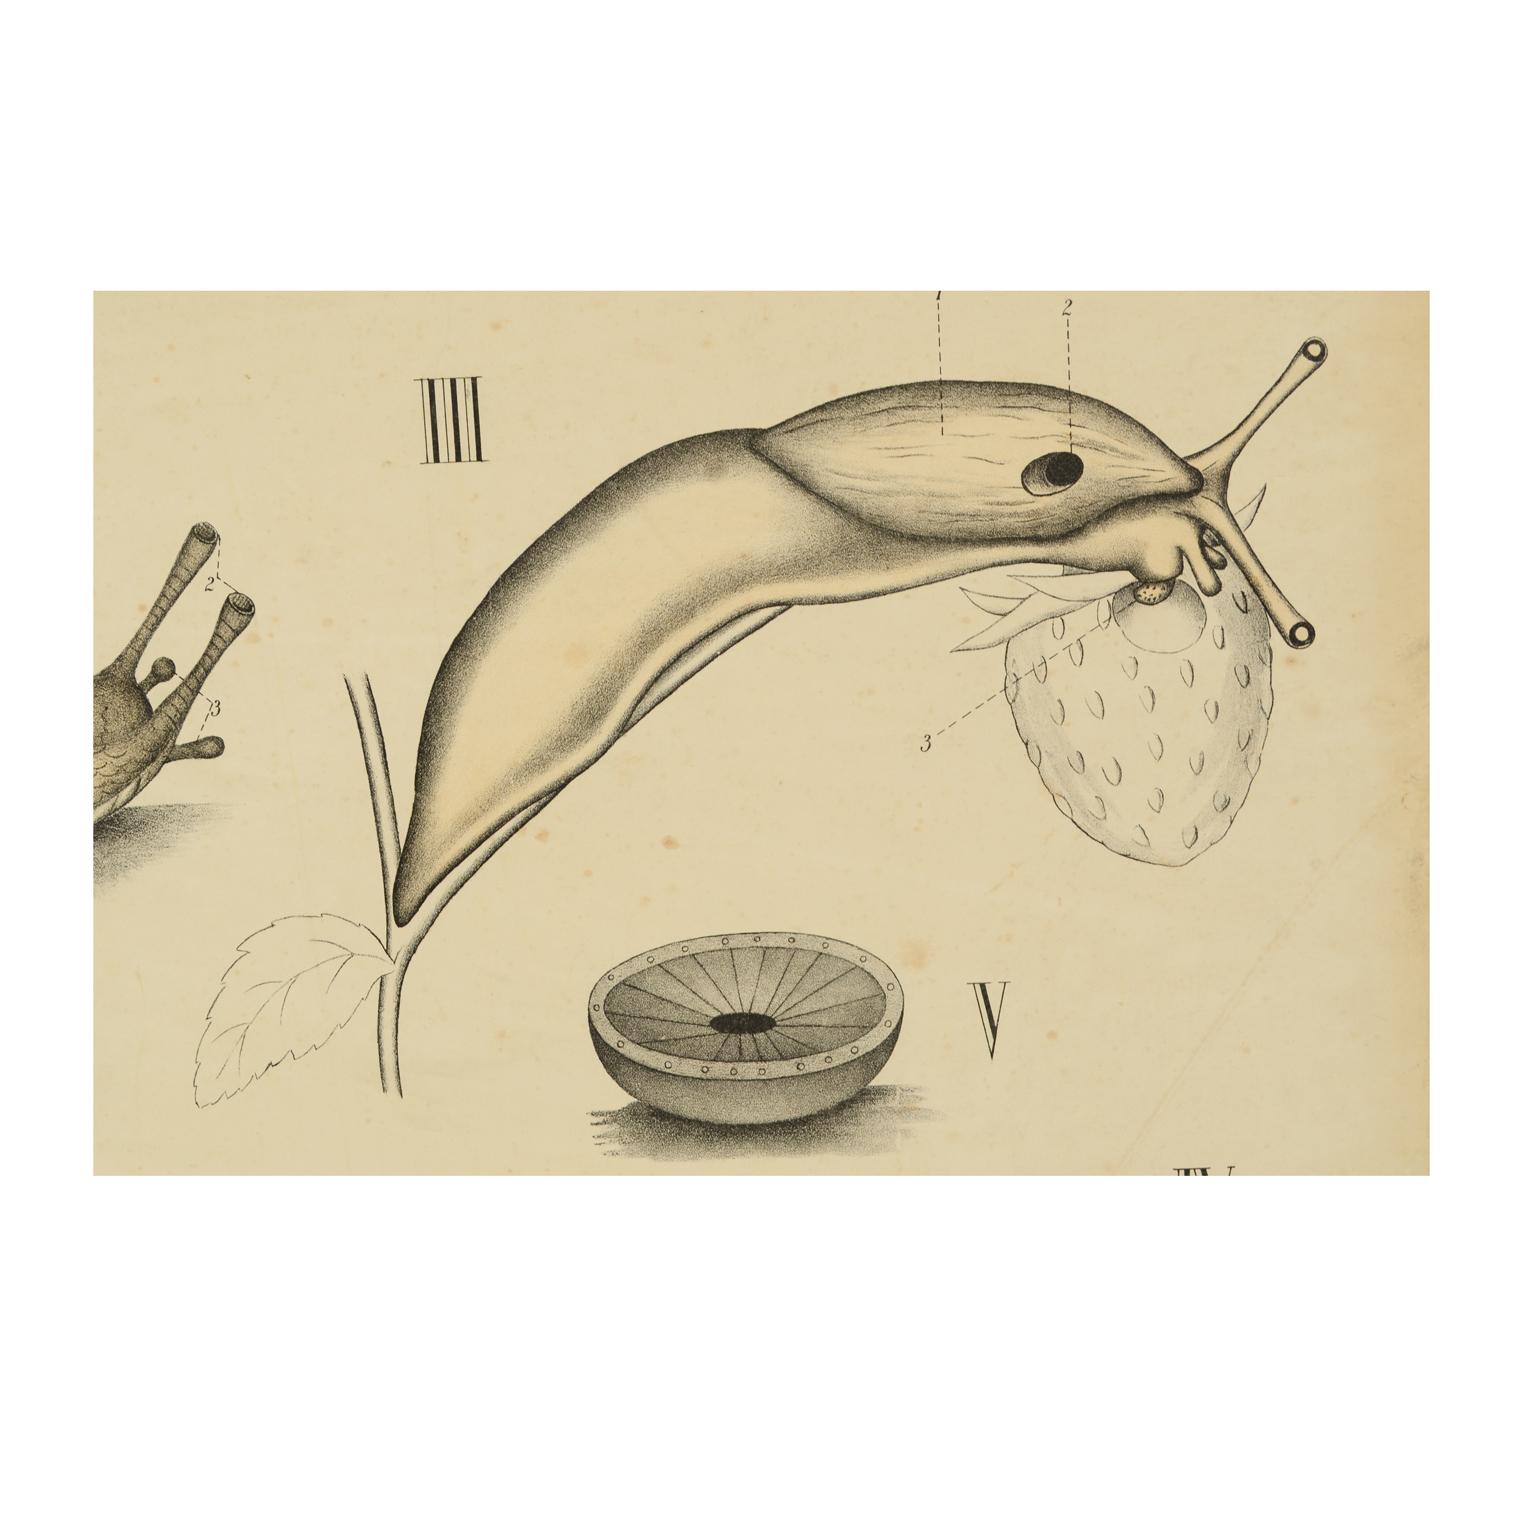 Zoologische Lehrtafel Pl 61, Farblithografie auf Karton aus dem Jahr 1925, die Mollusken darstellt. Dybdhals Zoologiske Plancher Kristiania lithografiske aktielbolag. Hergestellt von H Aschehoug & Co, einem der wichtigsten schwedischen